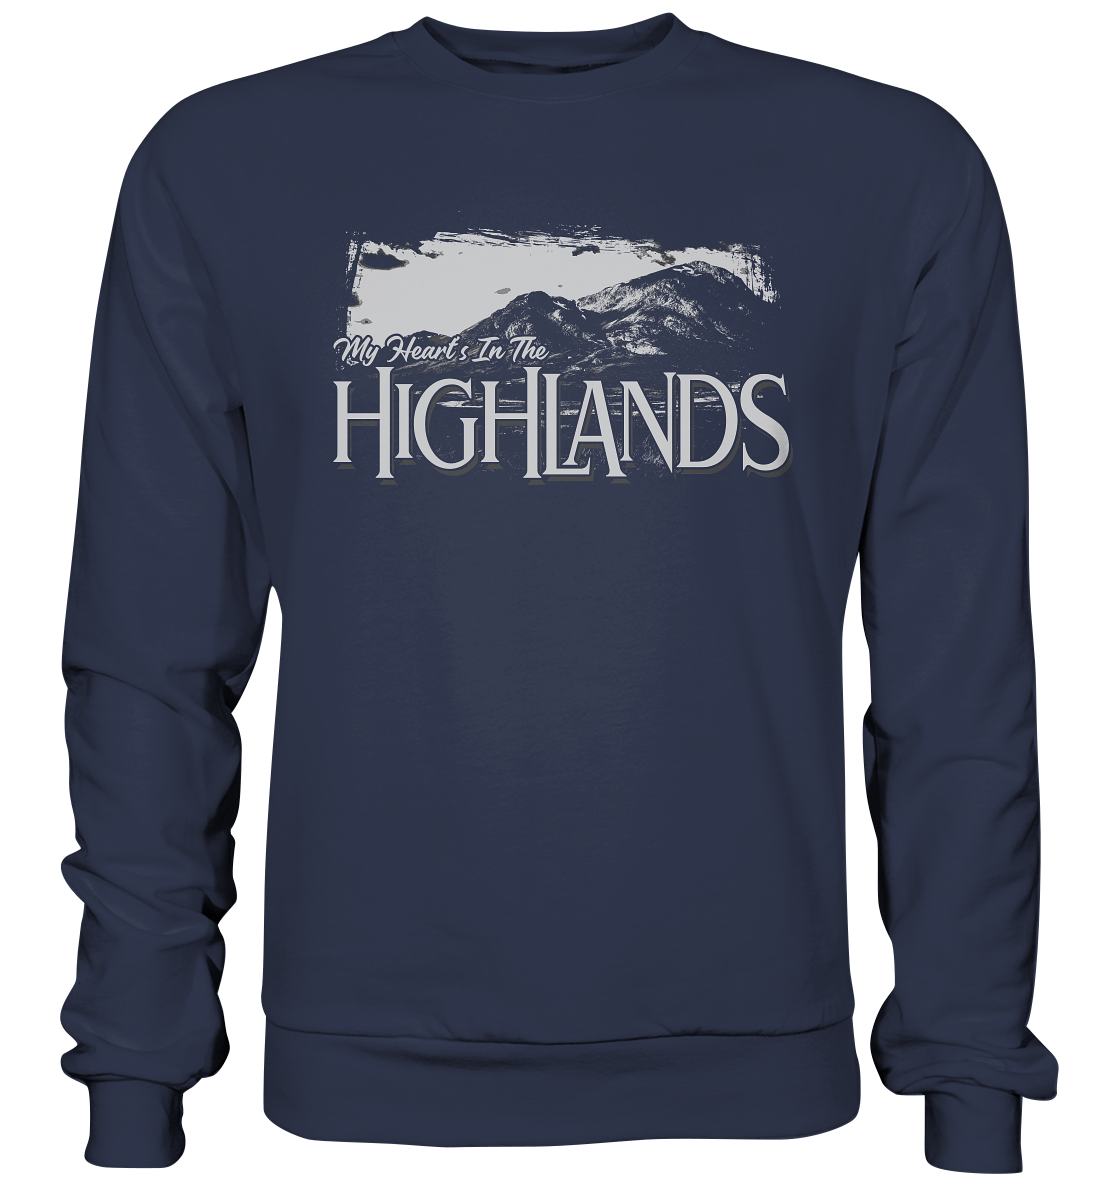 "My Heart's In The Highlands" - Premium Sweatshirt